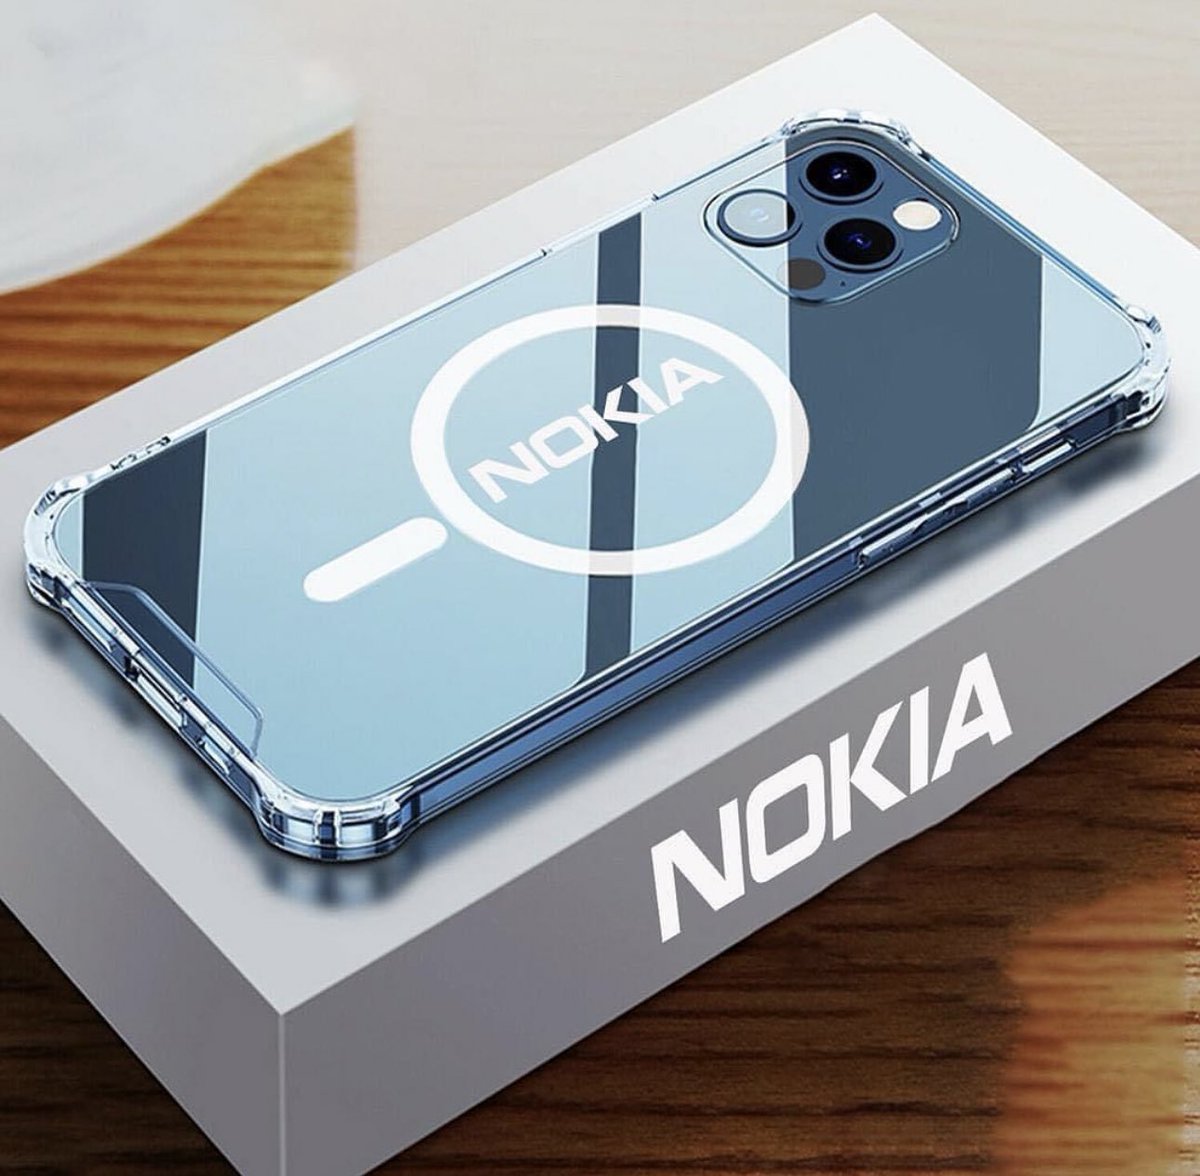 Nokia edge max iko na battery ya 7500 mAh wah